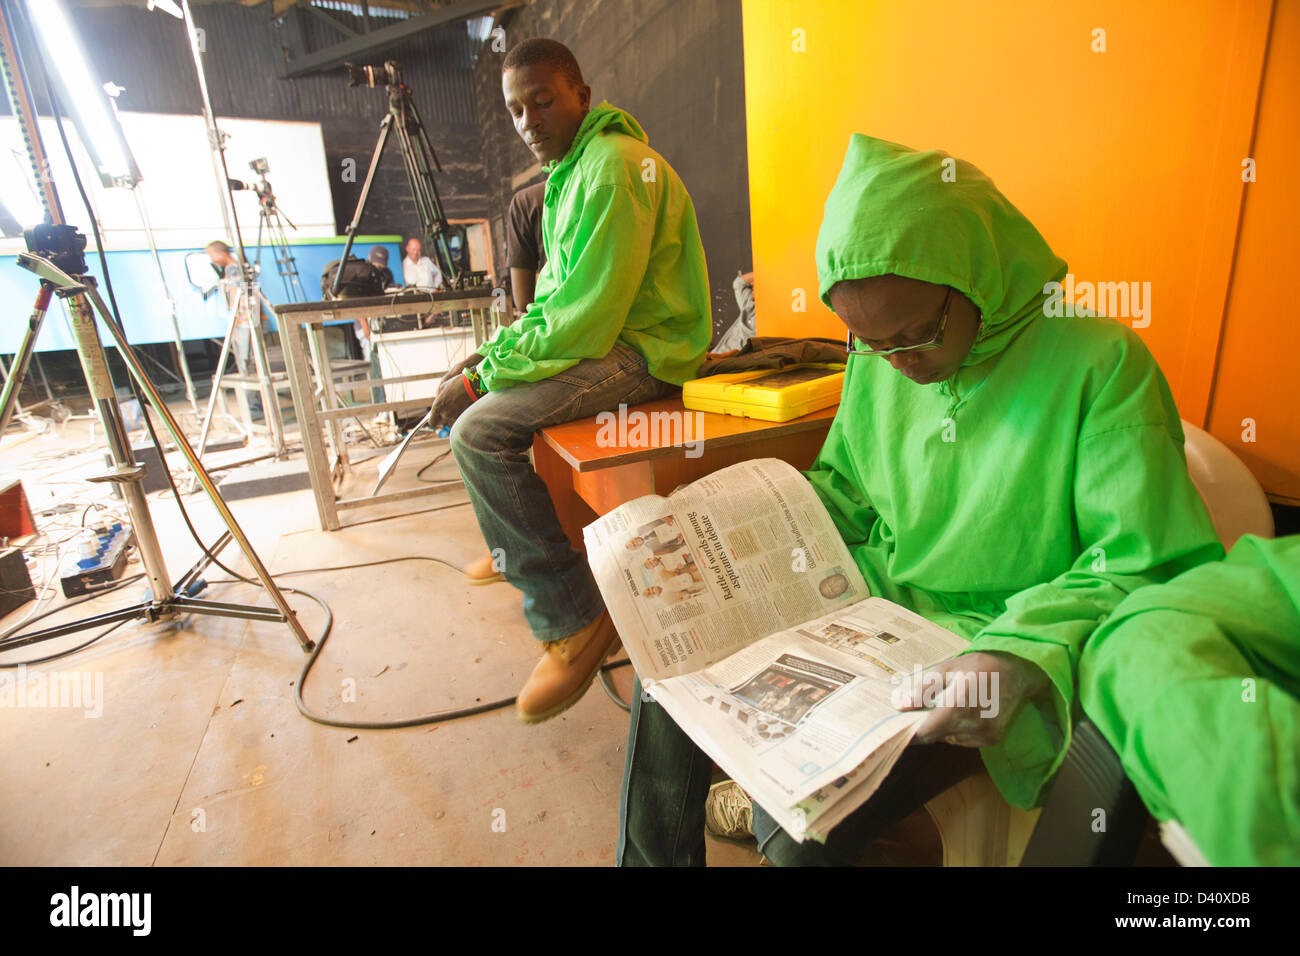 Nairobi, Kenia. 26. Februar 2013. Puppenspieler in Greenscreen Outfit eine Pause und liest eine Zeitung zwischen den Szenen während der Wahl Spezialsendung von der kenianischen Polit-Satire "XYZ-Show" schießen. Die Show bietet eine Spoof Nachrichtensendung von Latex Puppen. Stockfoto